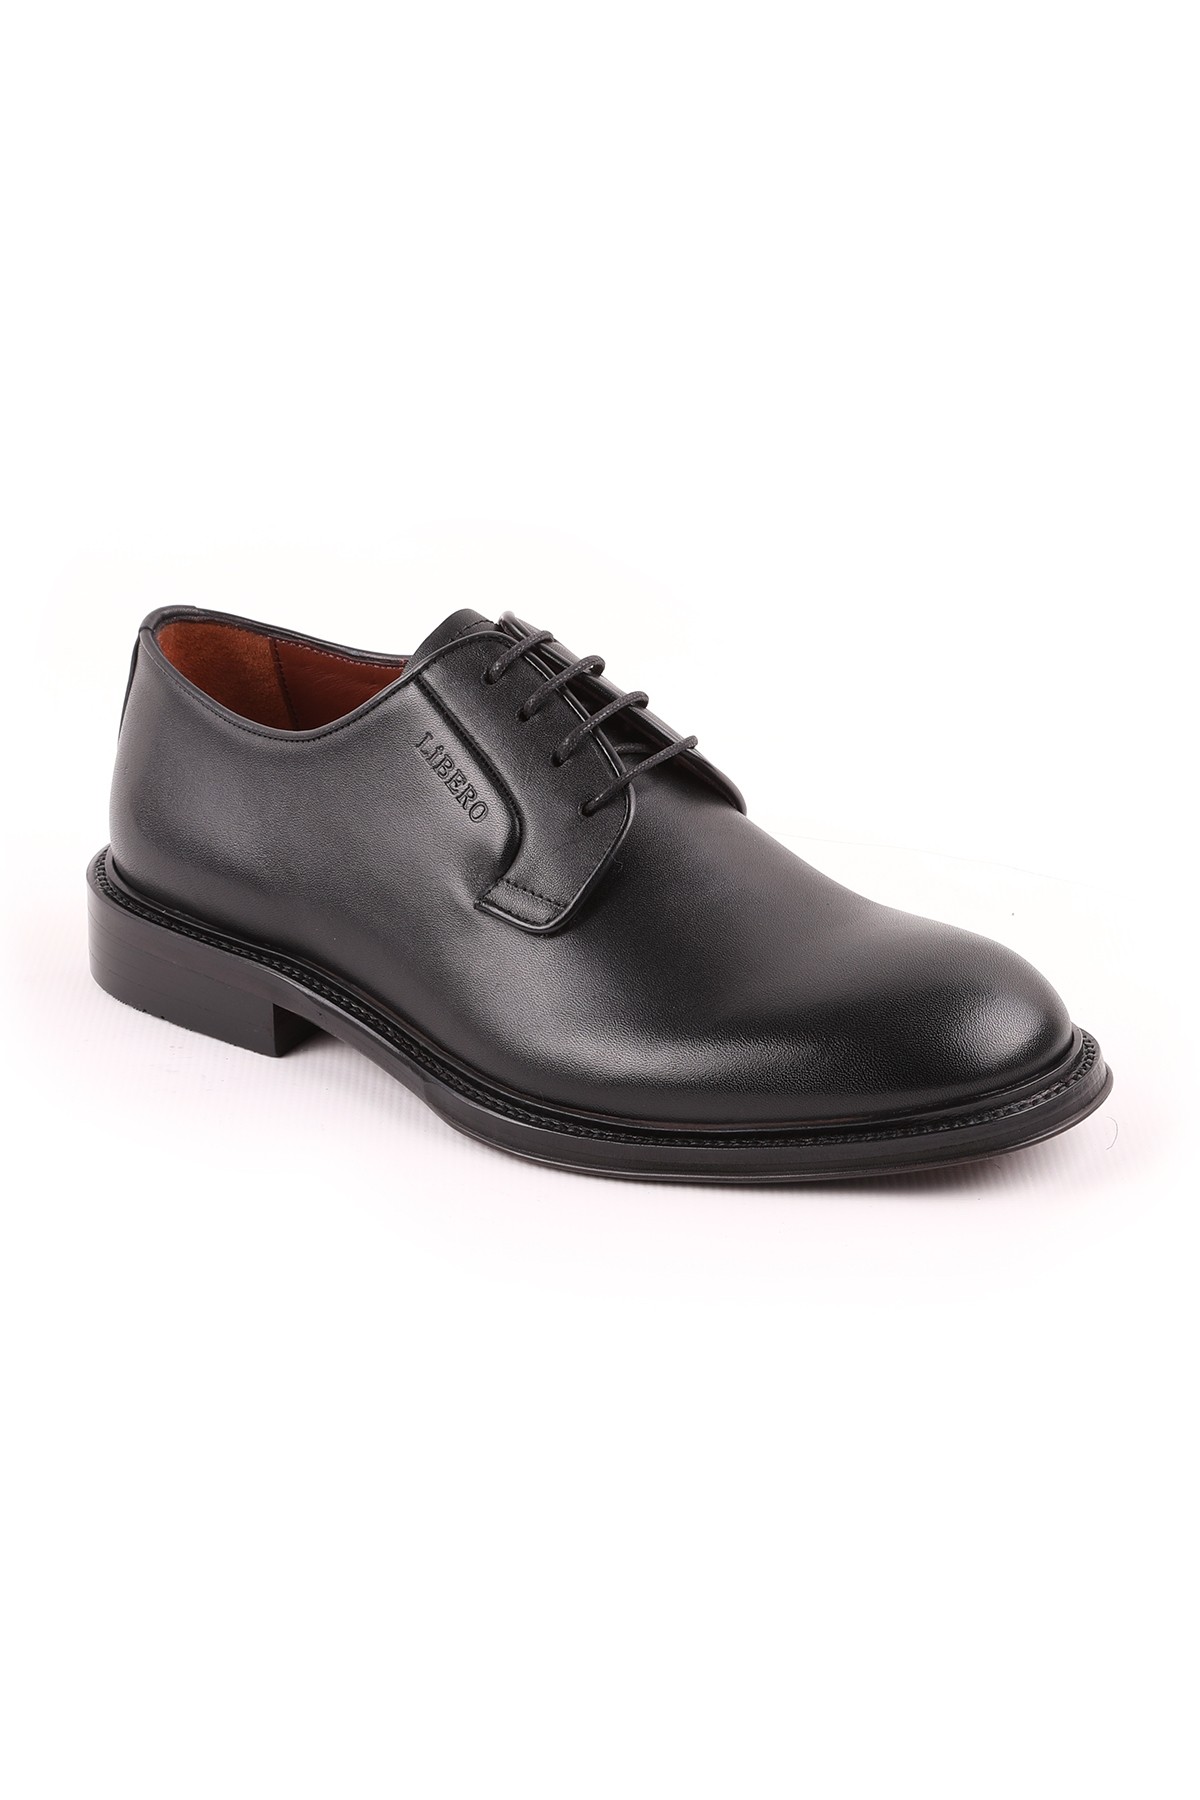 Libero L5232 Klasik Erkek Ayakkabı - 44